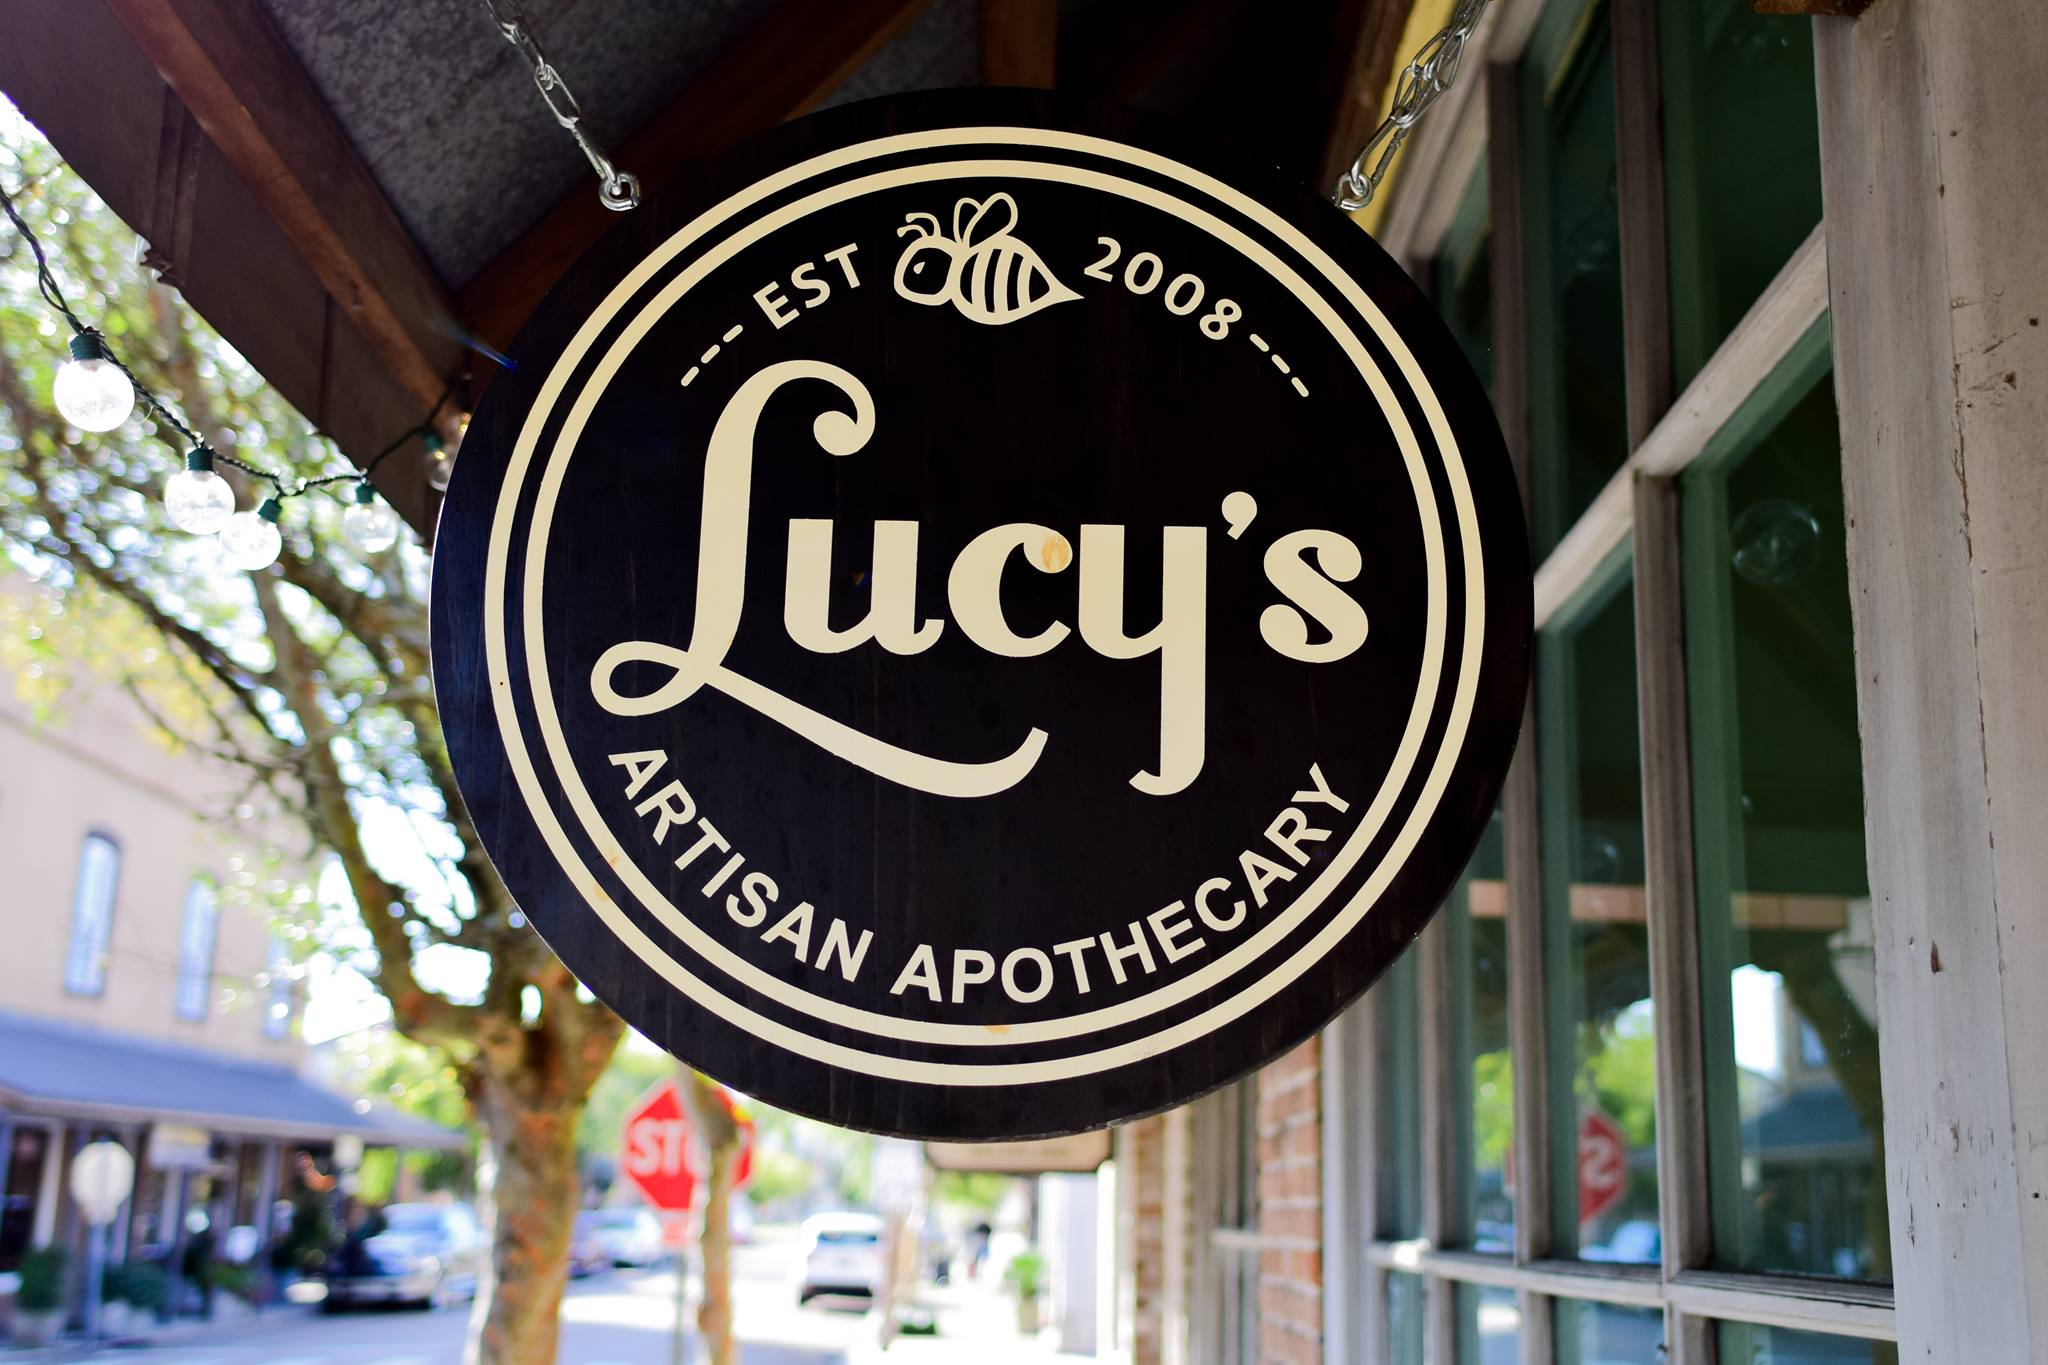 Lucy’s Artisan Apothecary New Home to NOLAS, Fleur de Light